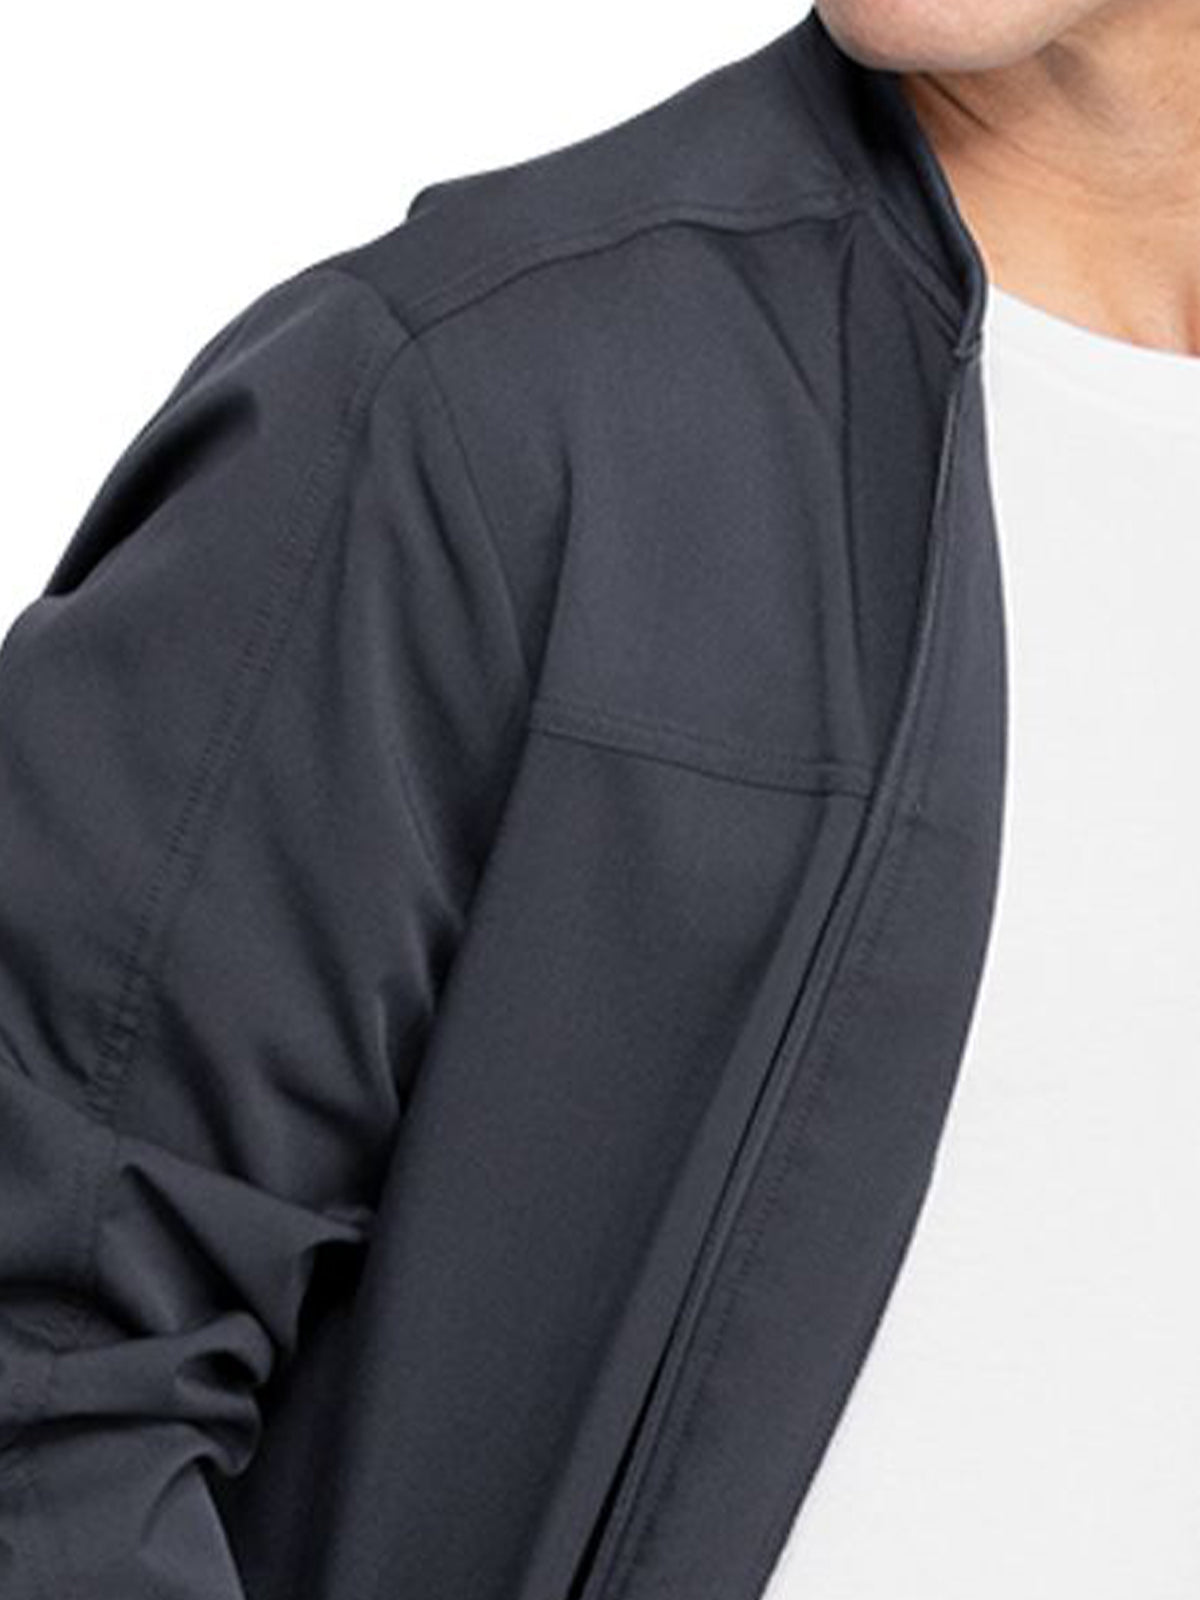 Men's 5-Pocket Zip Front Scrub Jacket - DK370 - Pewter